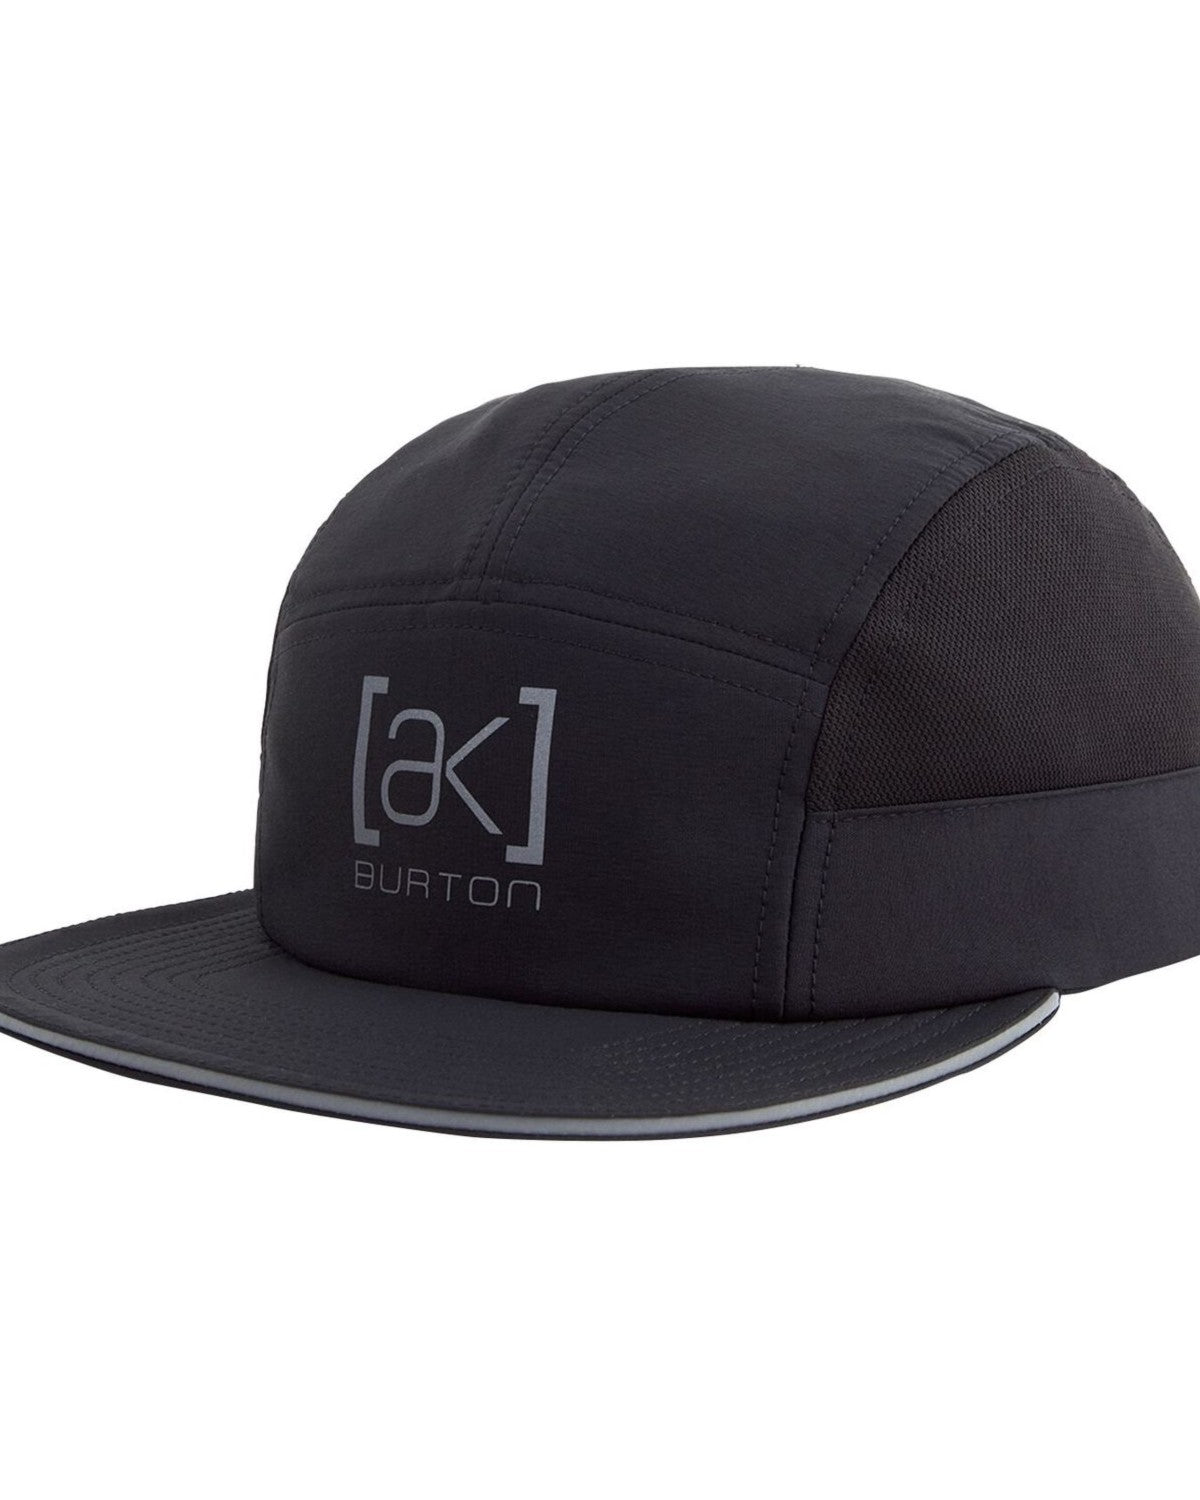 Burton [ak] Tour Hat True Black OS Hats